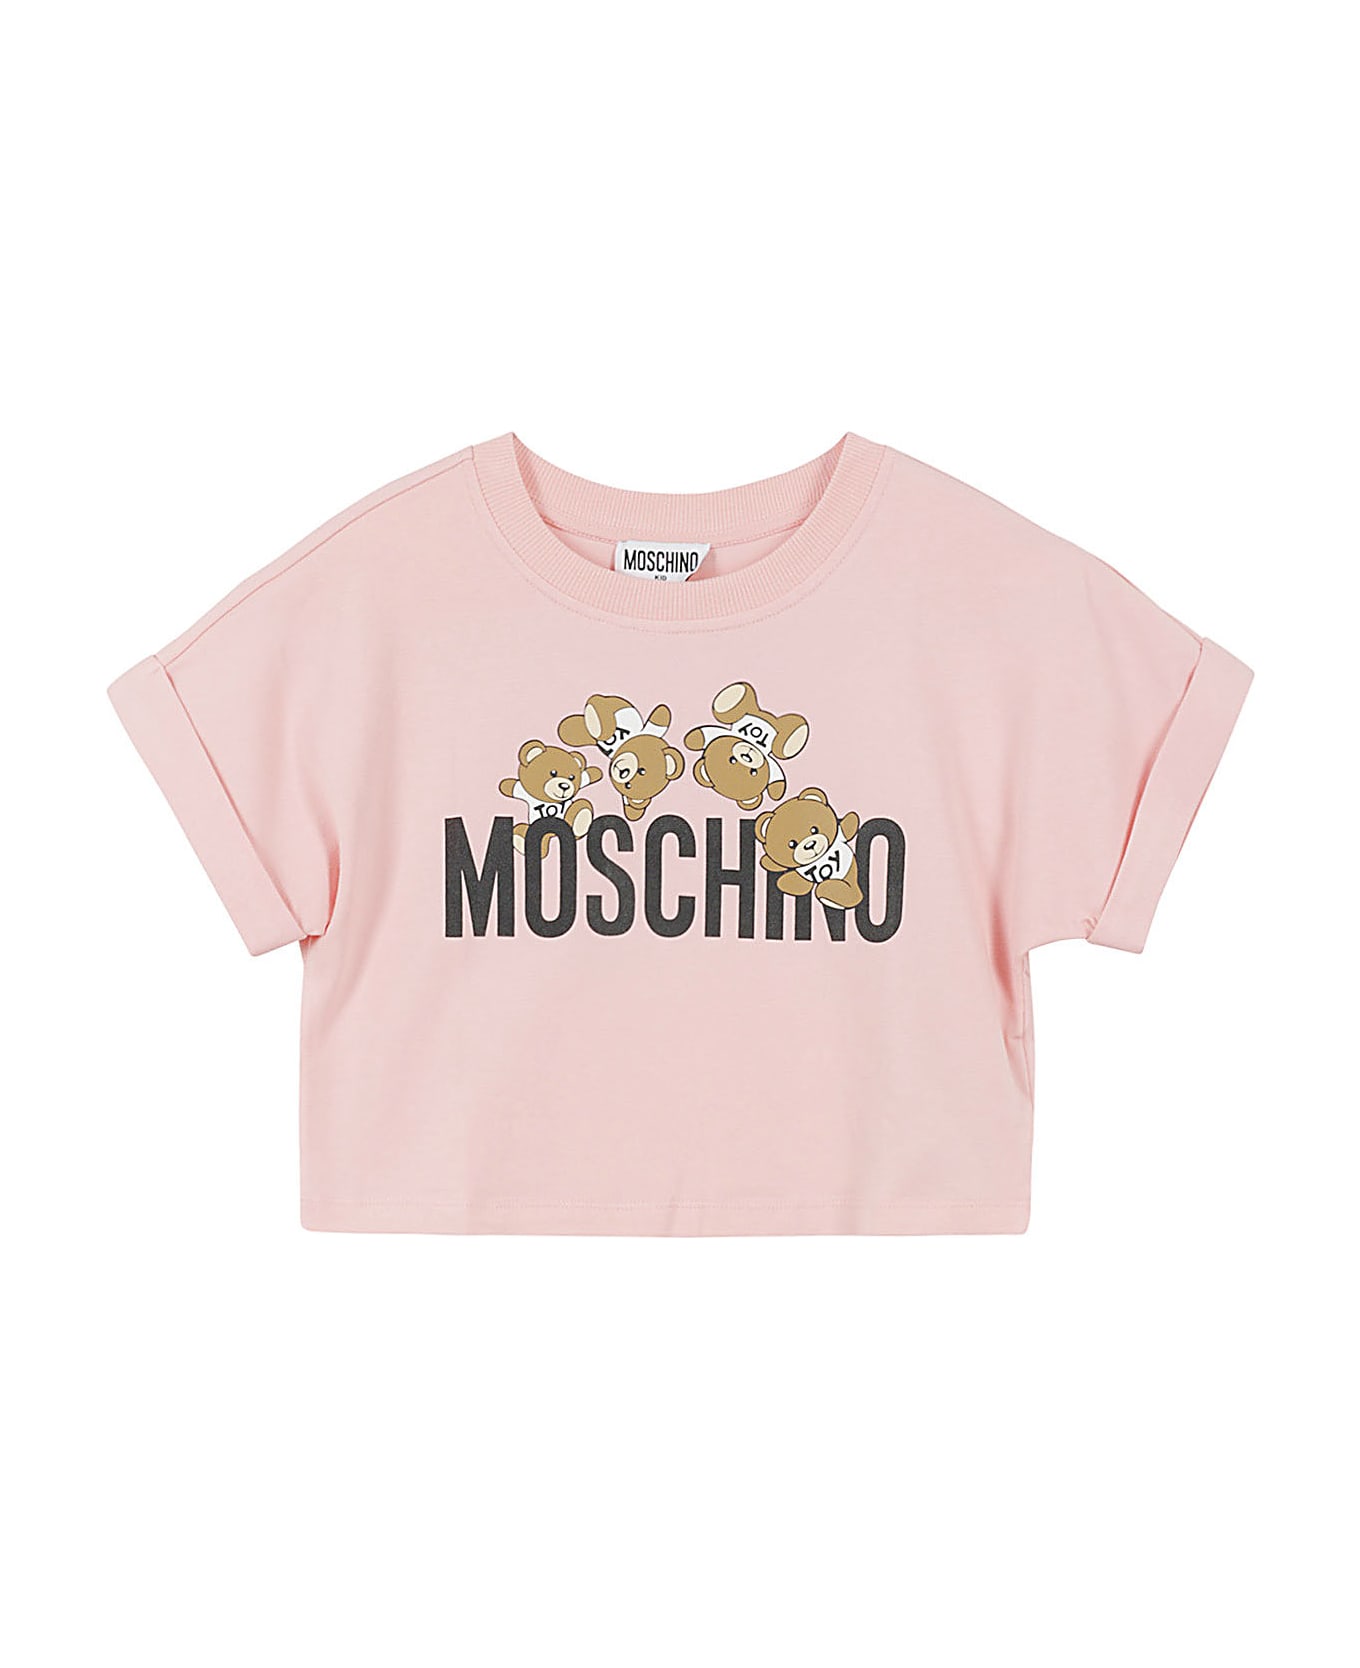 Moschino Tshirt Addition - Sugar Rose